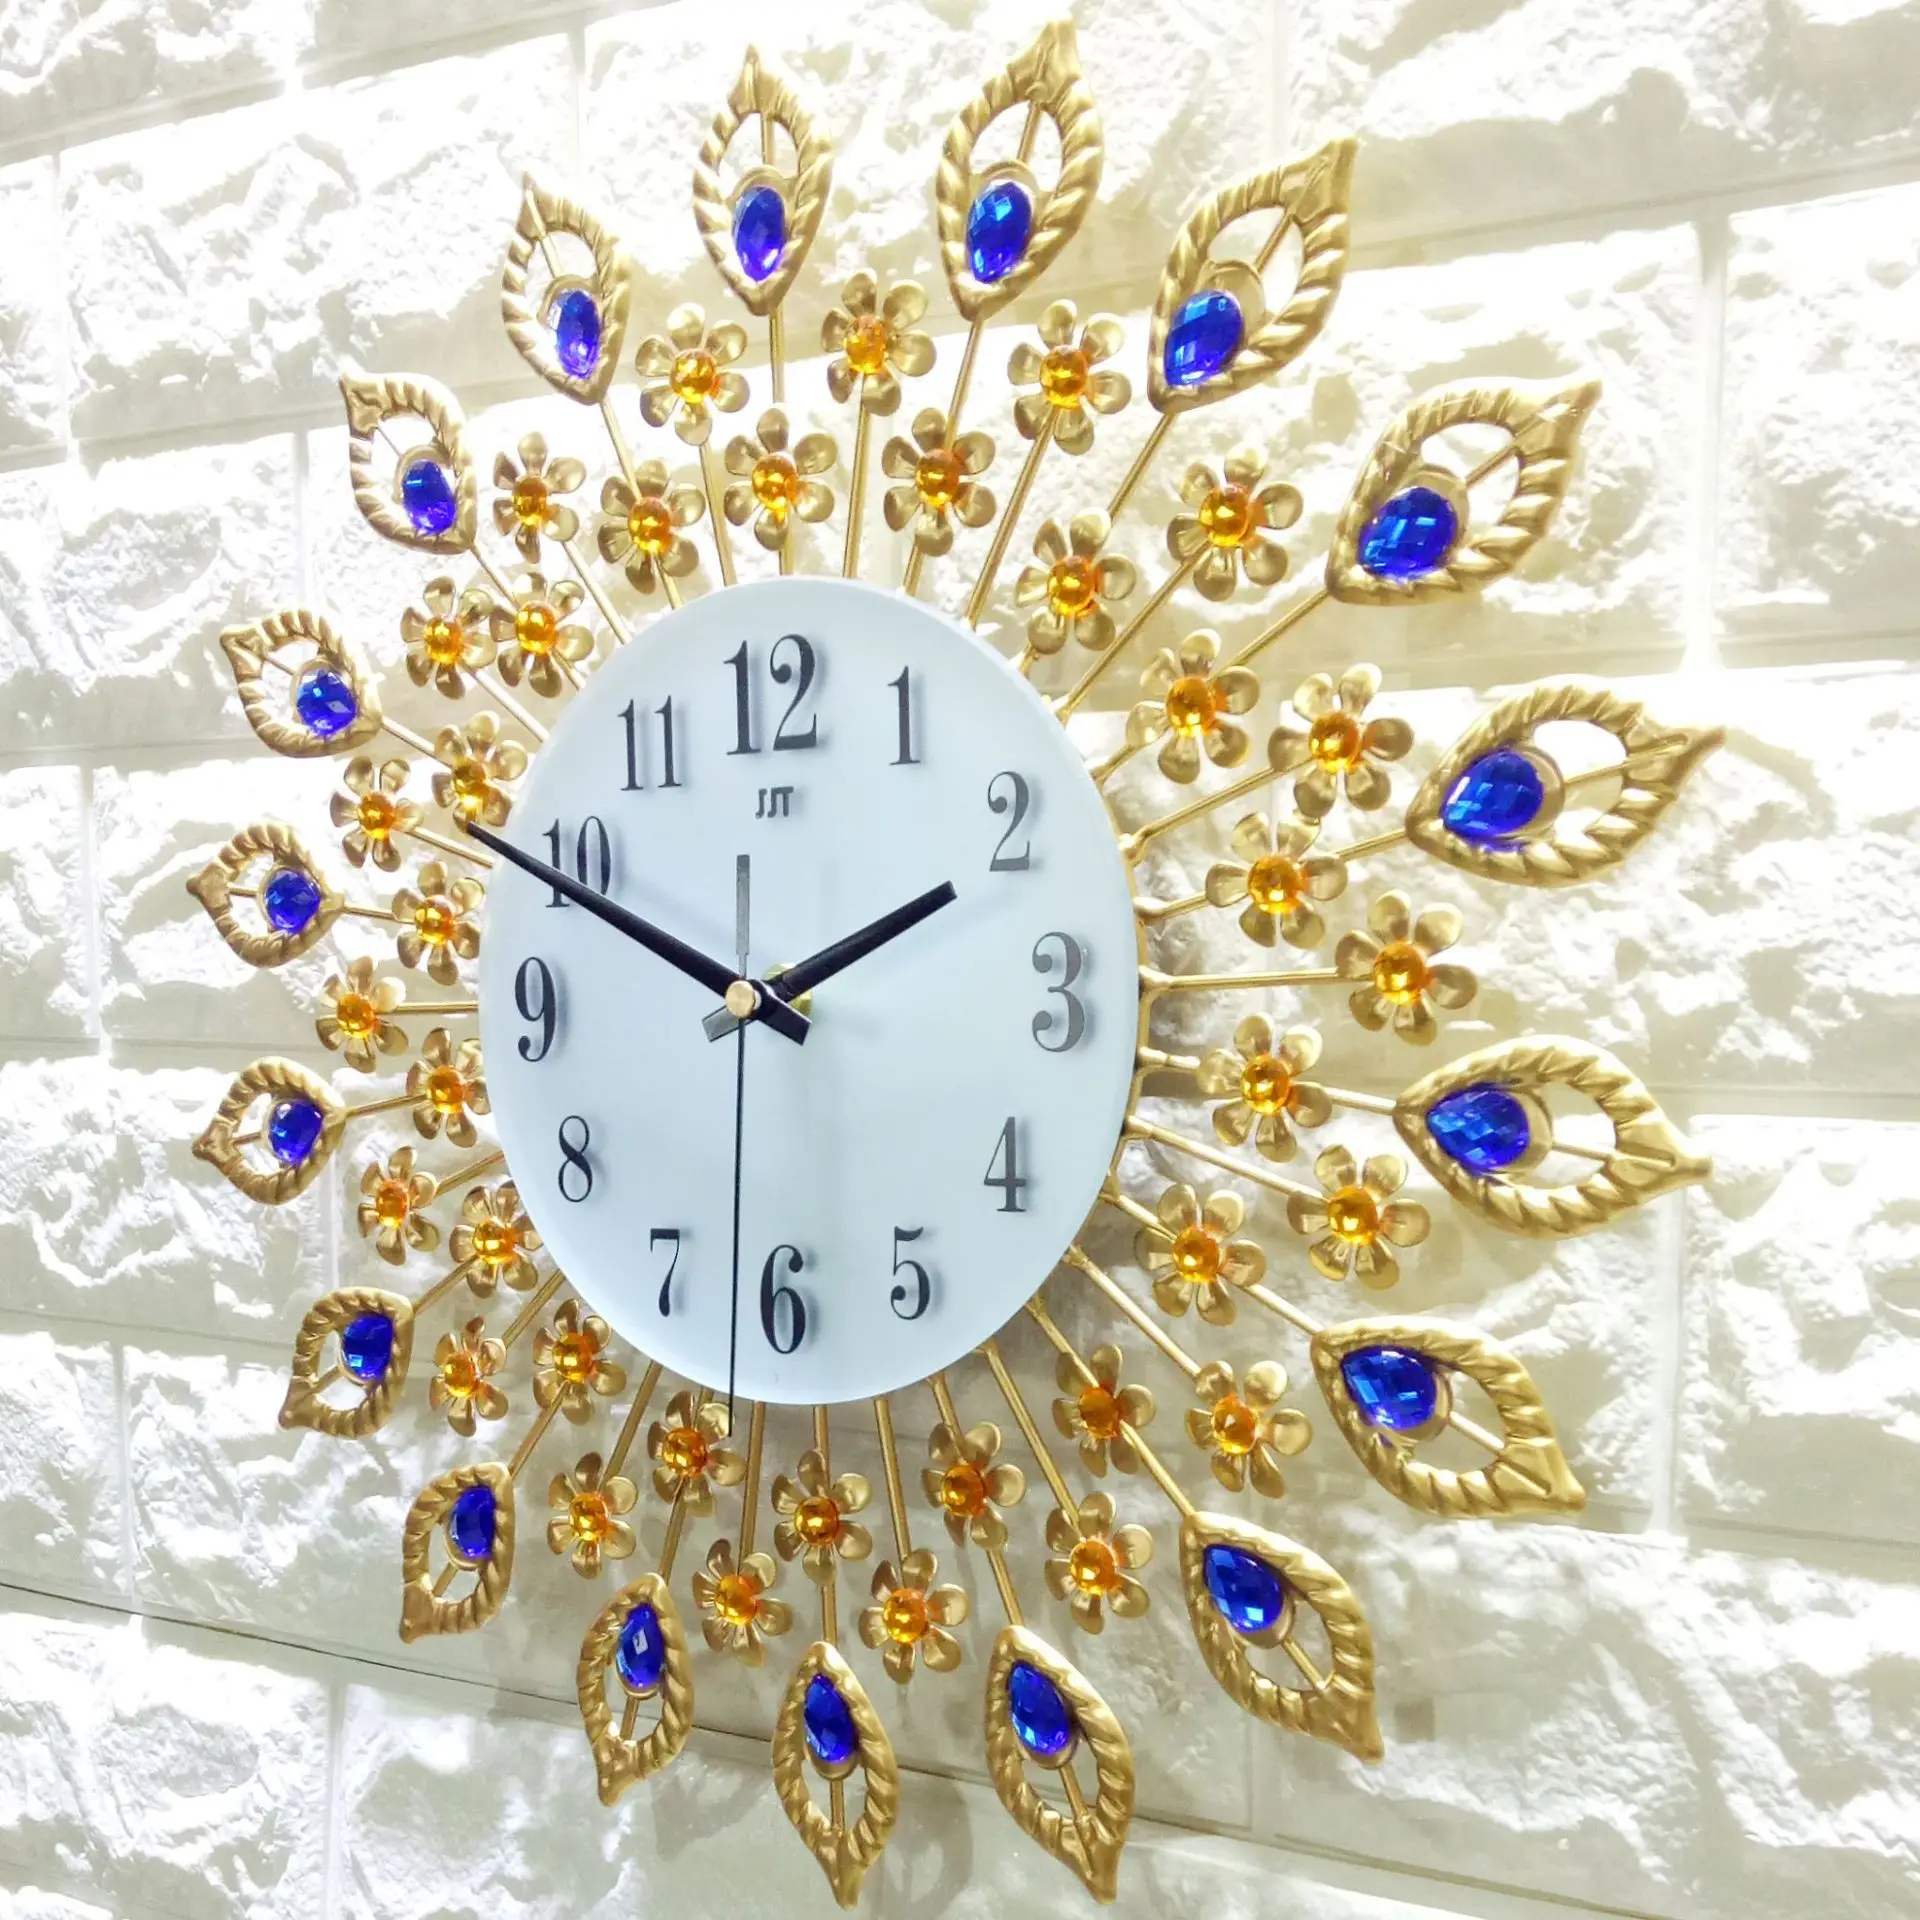 Настенные часы Павлин винтажные цифровые большие настенные часы кухонные украшения для дома аксессуары reloj pavo настоящие reloj винтажные часы